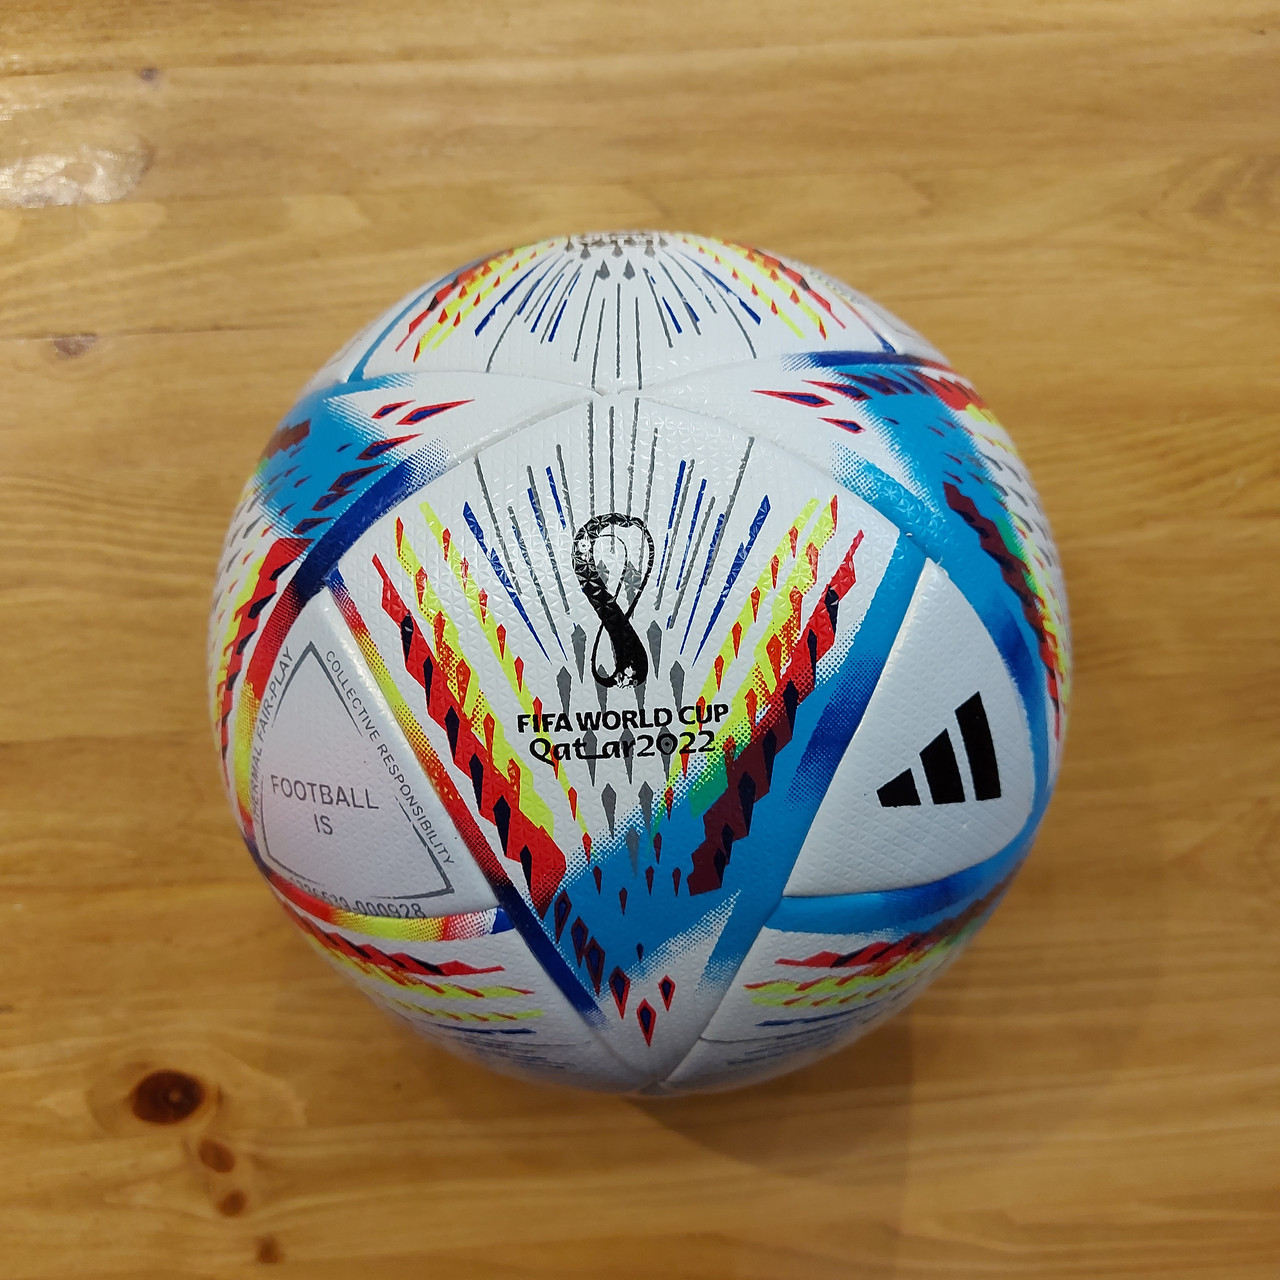 Профессиональный Футбольный Мяч "Аdidas" Fifa World Cup Qatar 2022. Size 5. Оригинальный.